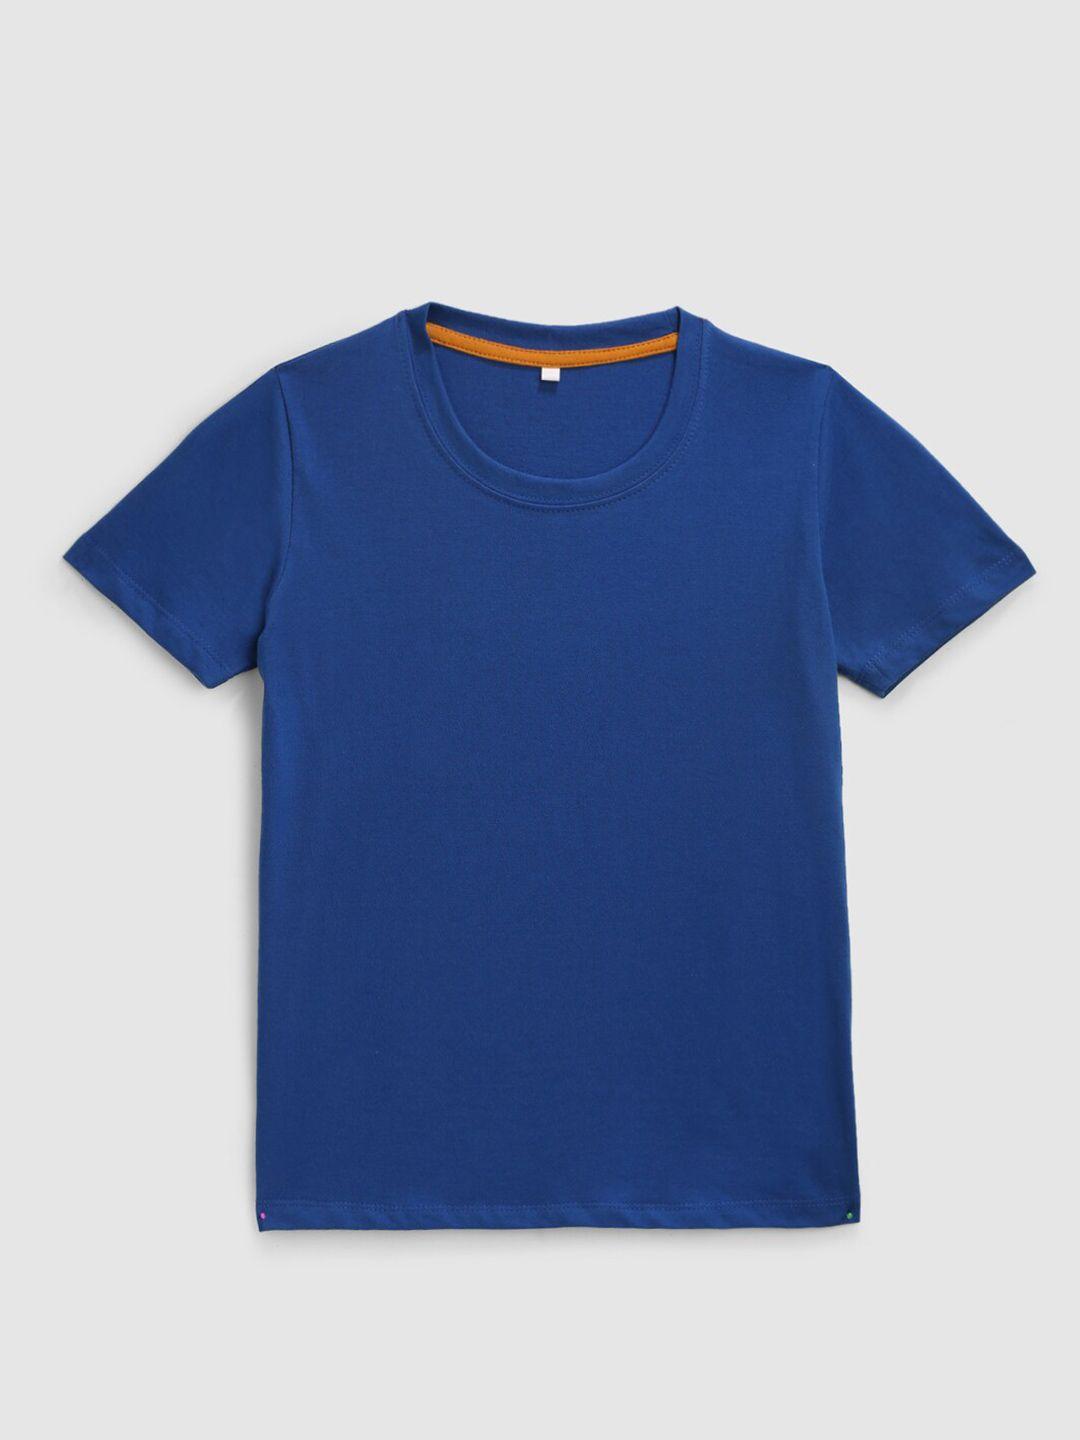 kidscraft boys blue running cotton t-shirt